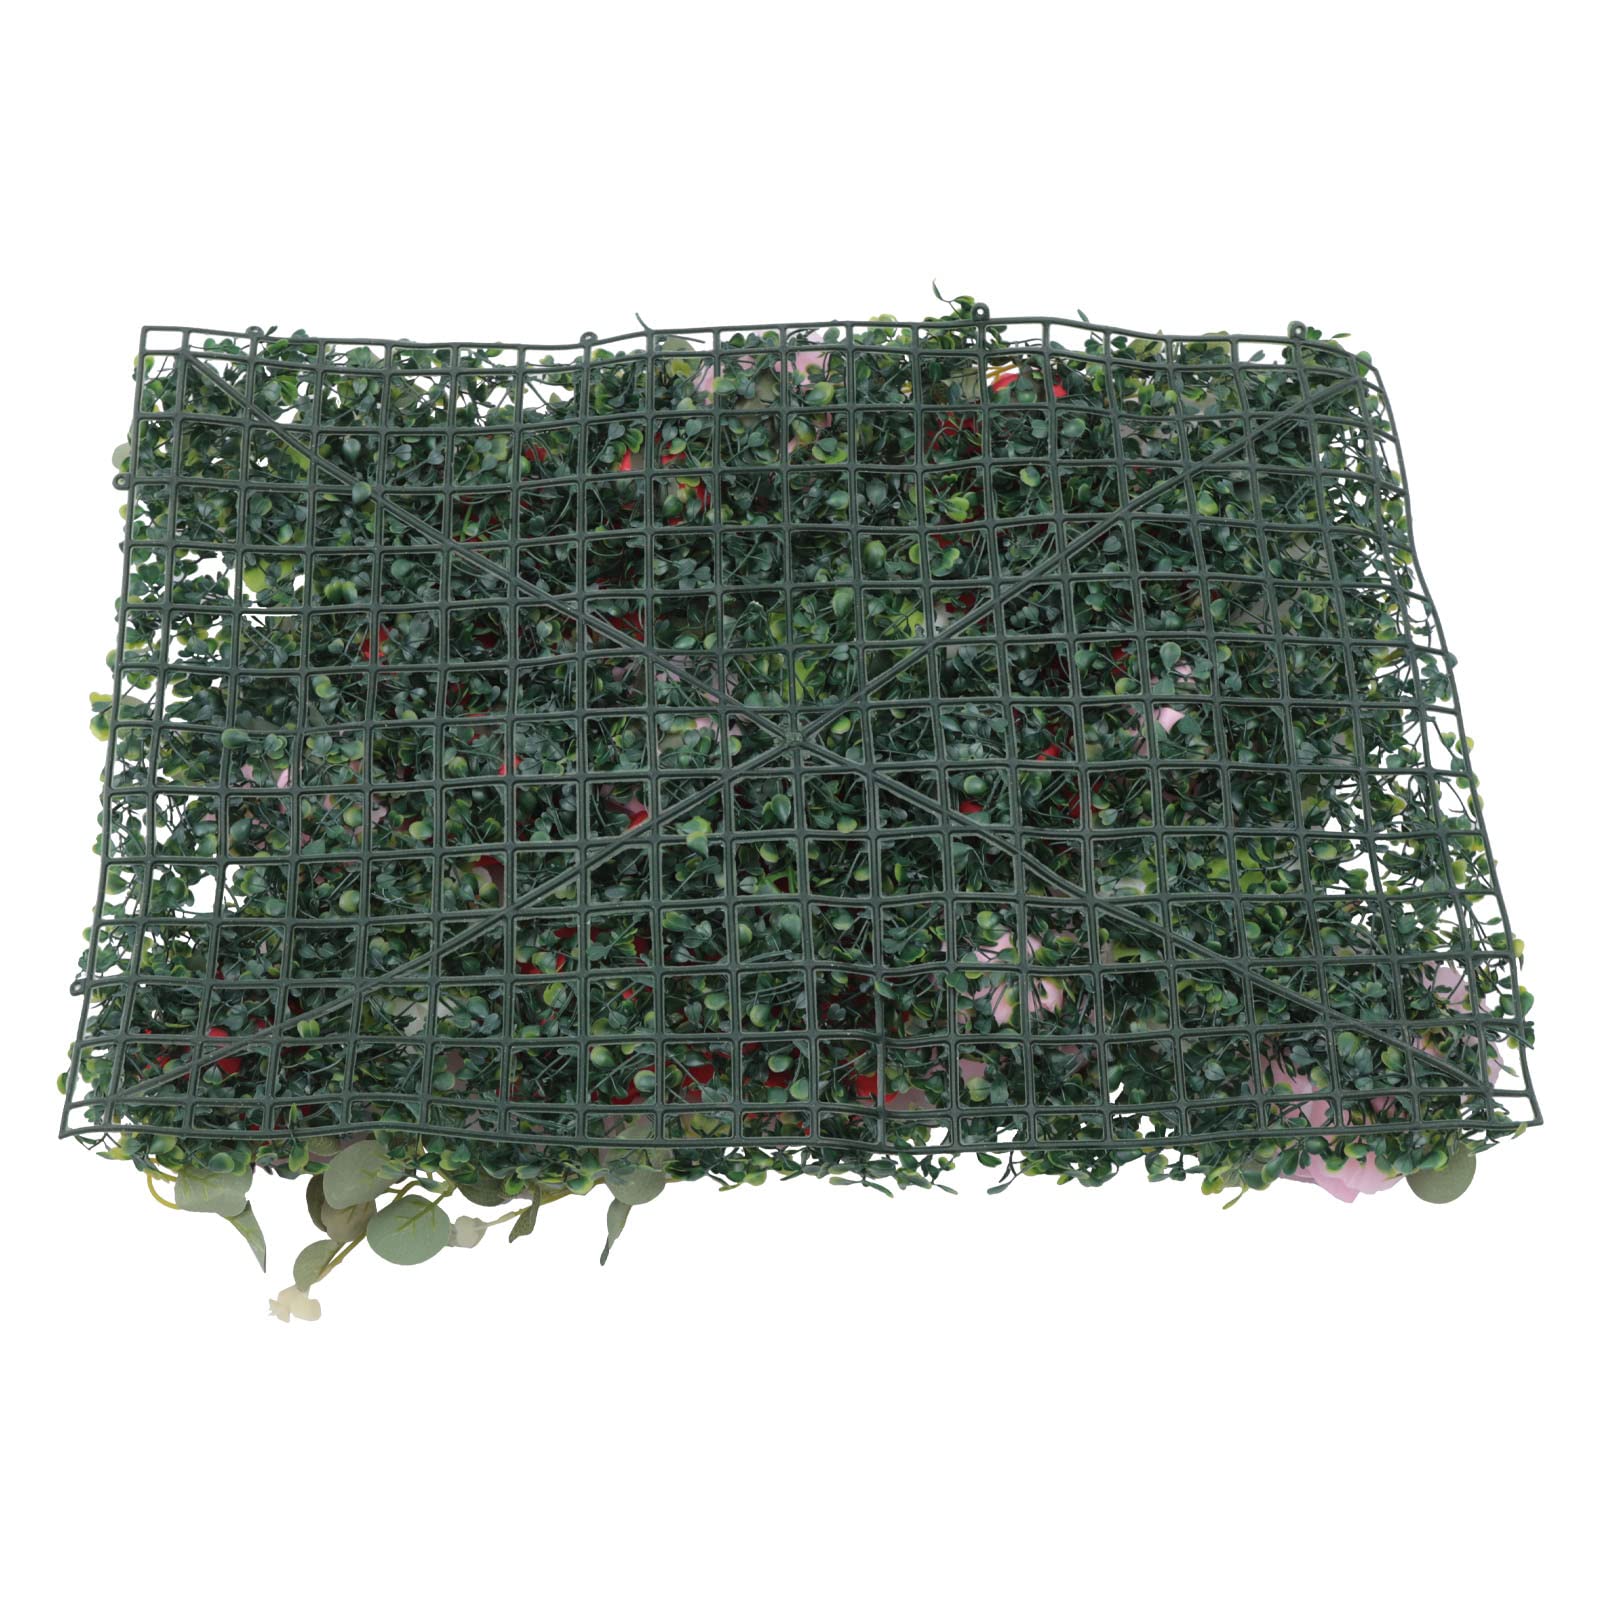 6 Pcs Fleur Mur Panneau Fleur Artificielle Mur Plantes Artificielles